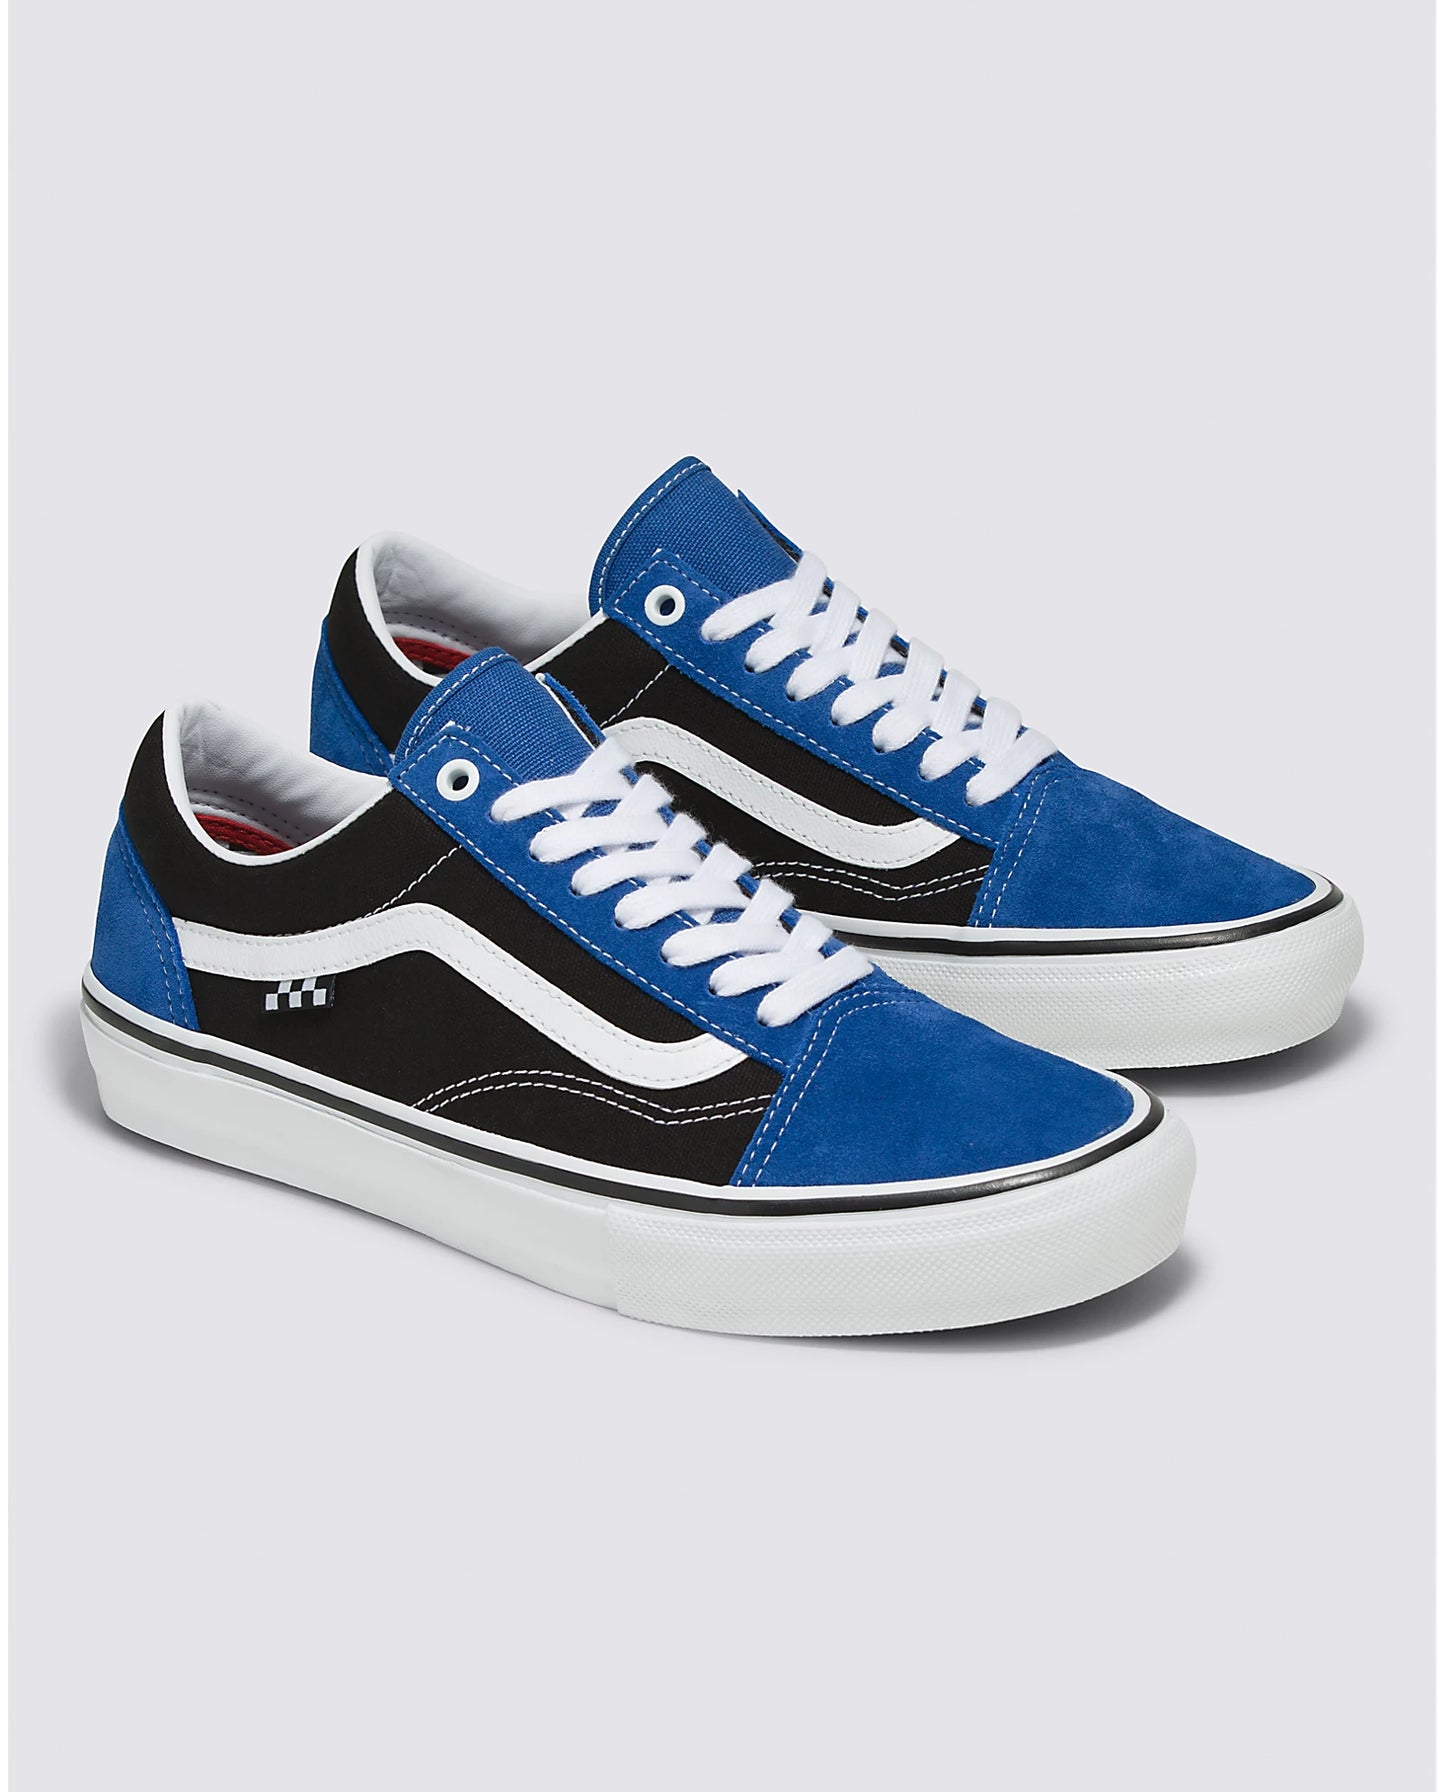 Vans Skate Old Skool Blue/Black/White